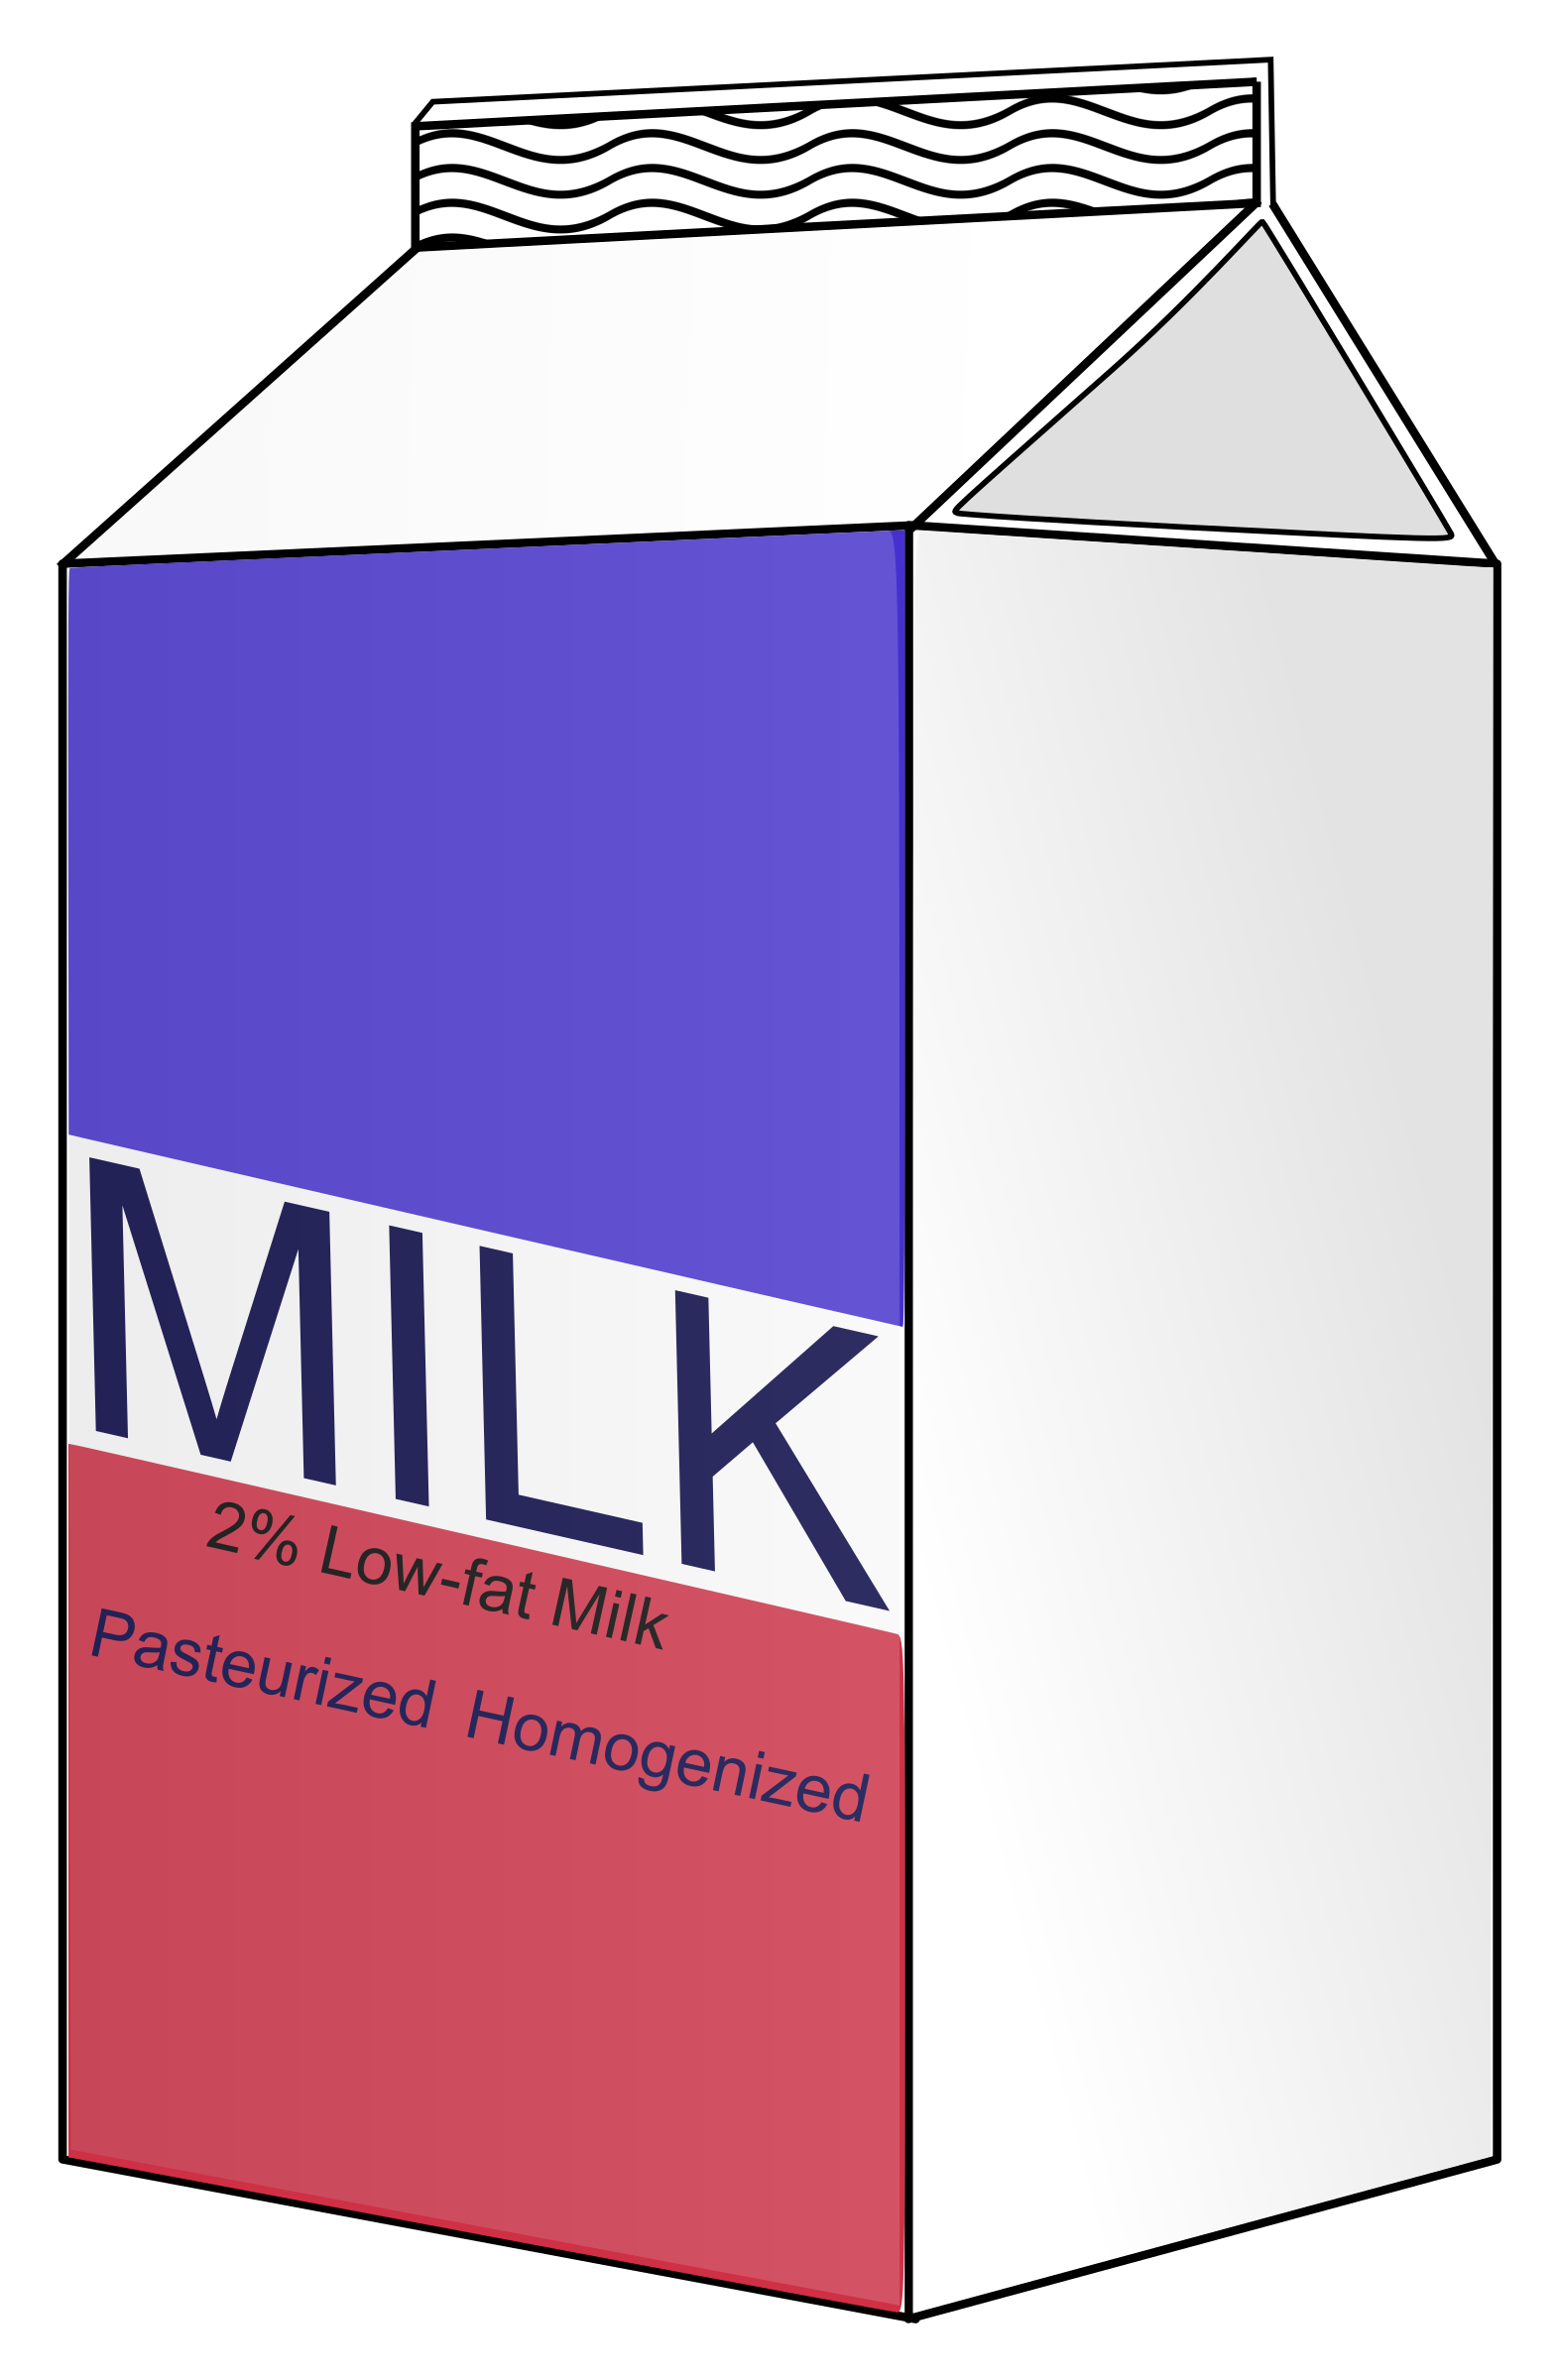 milk carton vector clipart image photo #14244